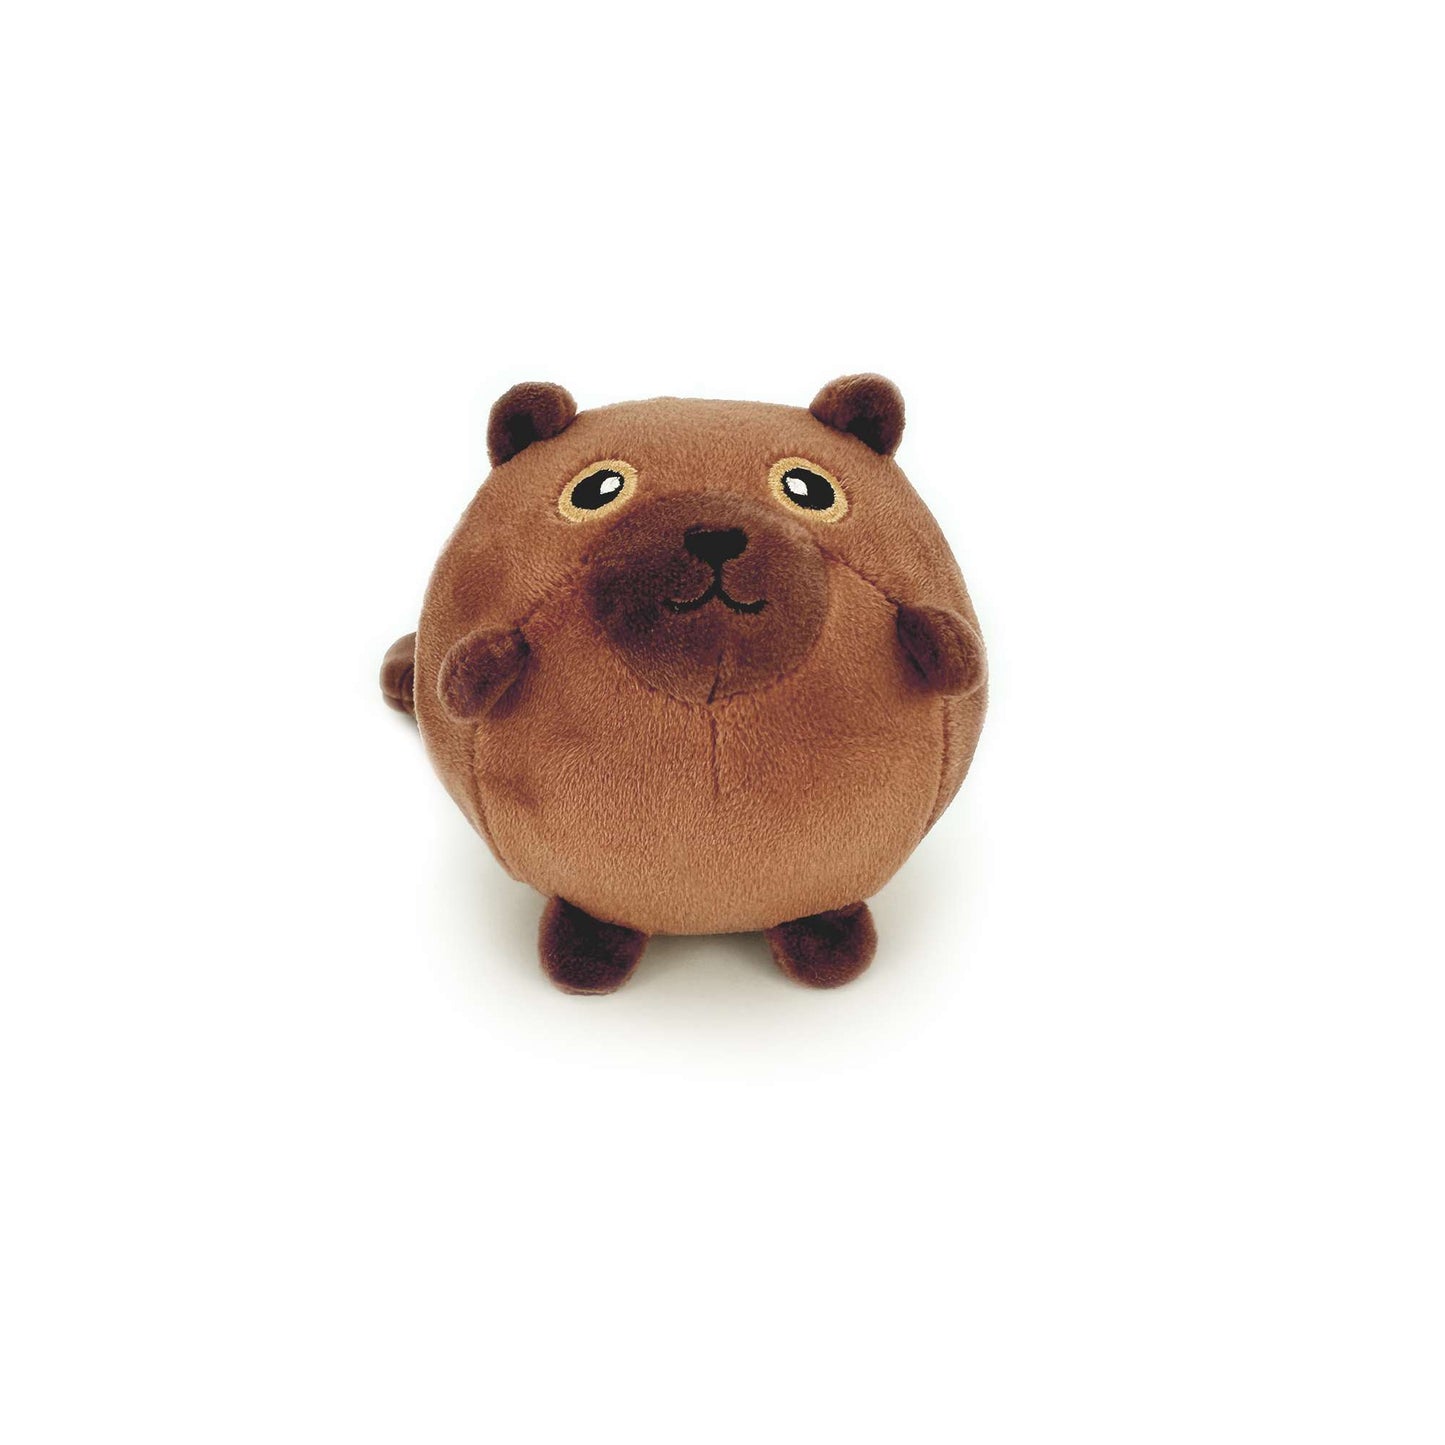 Chubby cartoon squirrel plush toy